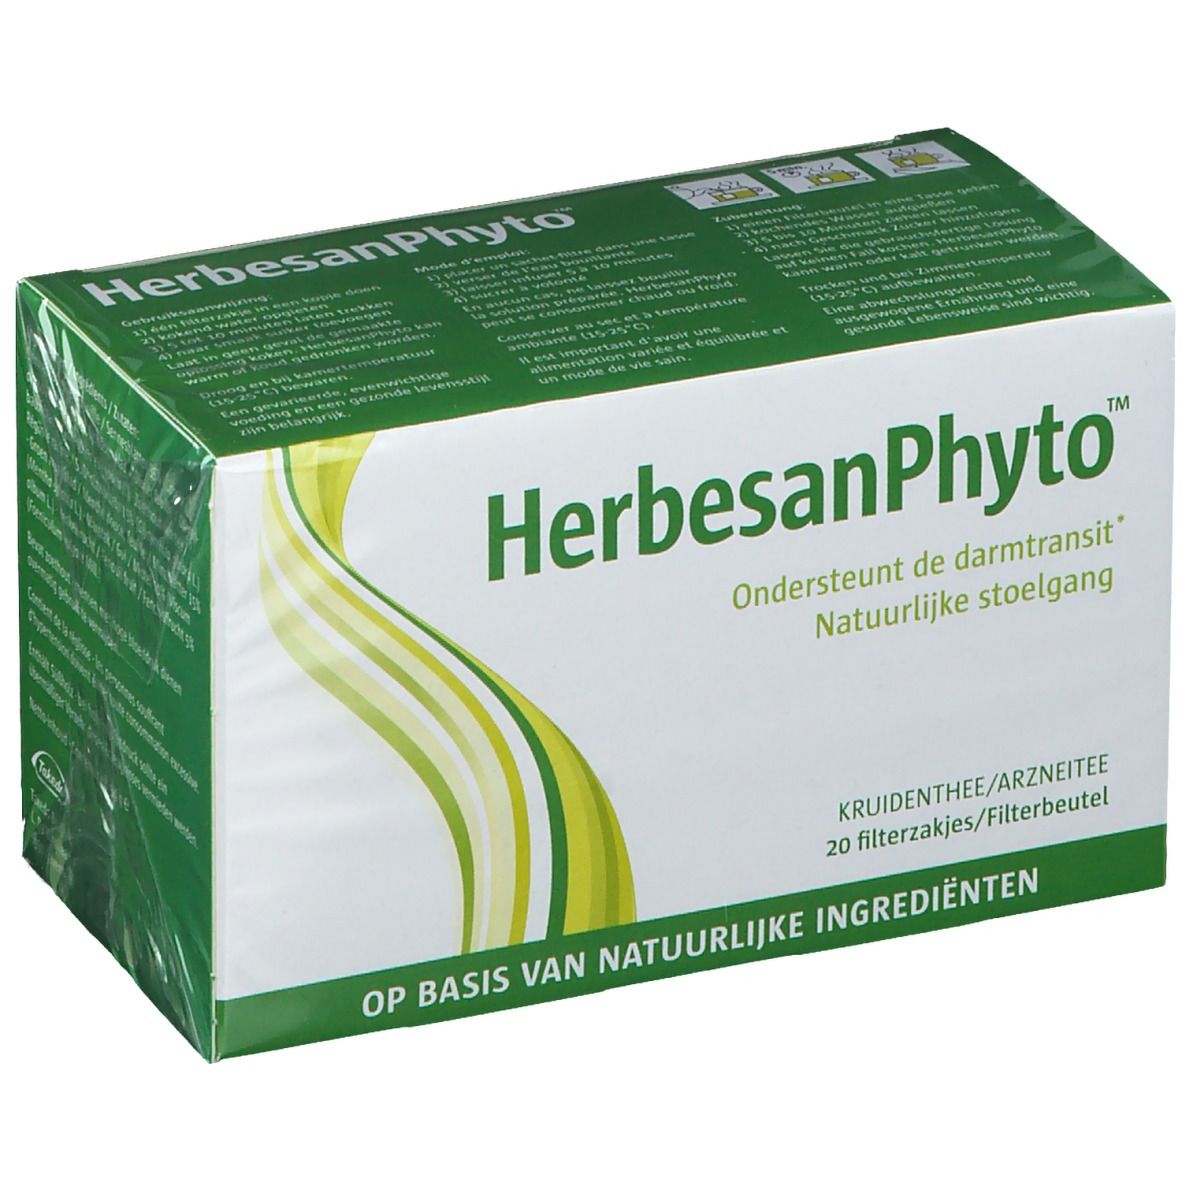 Image of Herbesan Phyto™ Tisane